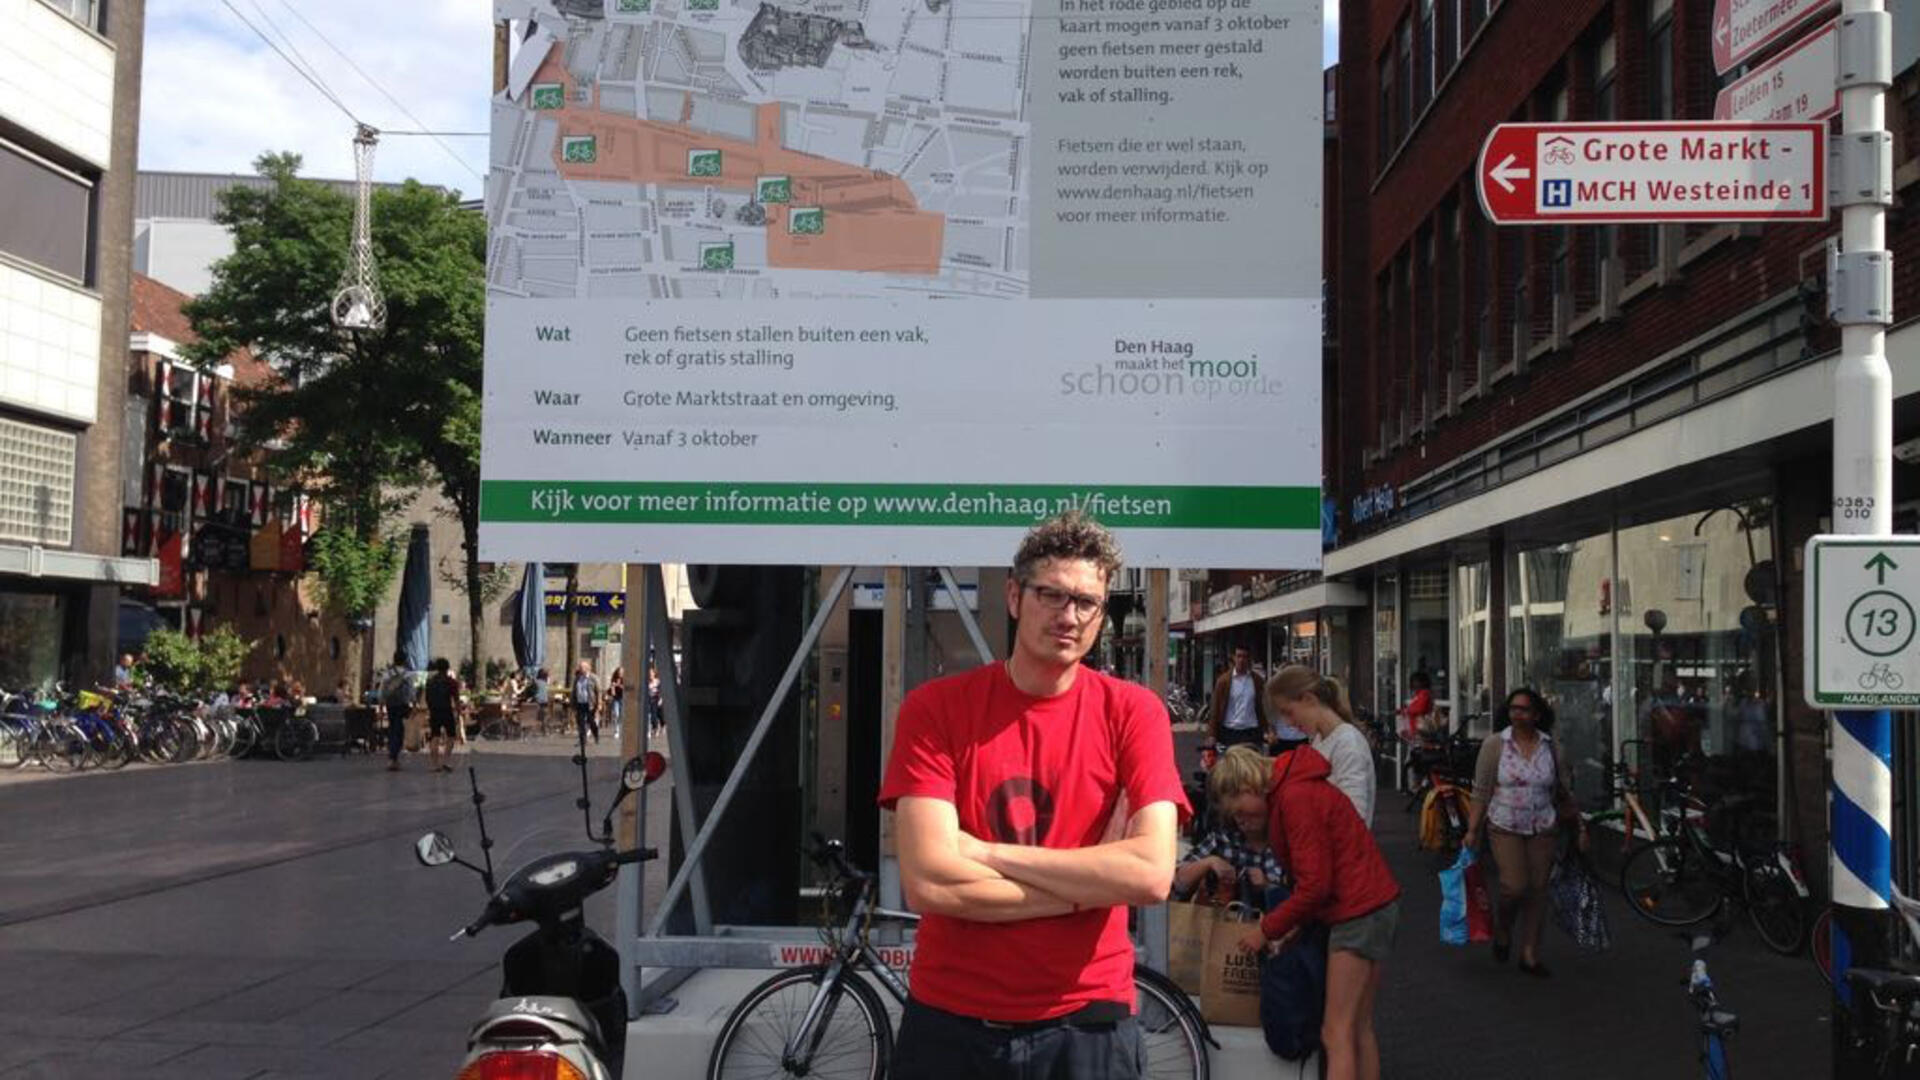 Merchandising Groene achtergrond Vertrappen GroenLinks: fietsenjacht moet stoppen | GroenLinks Den Haag